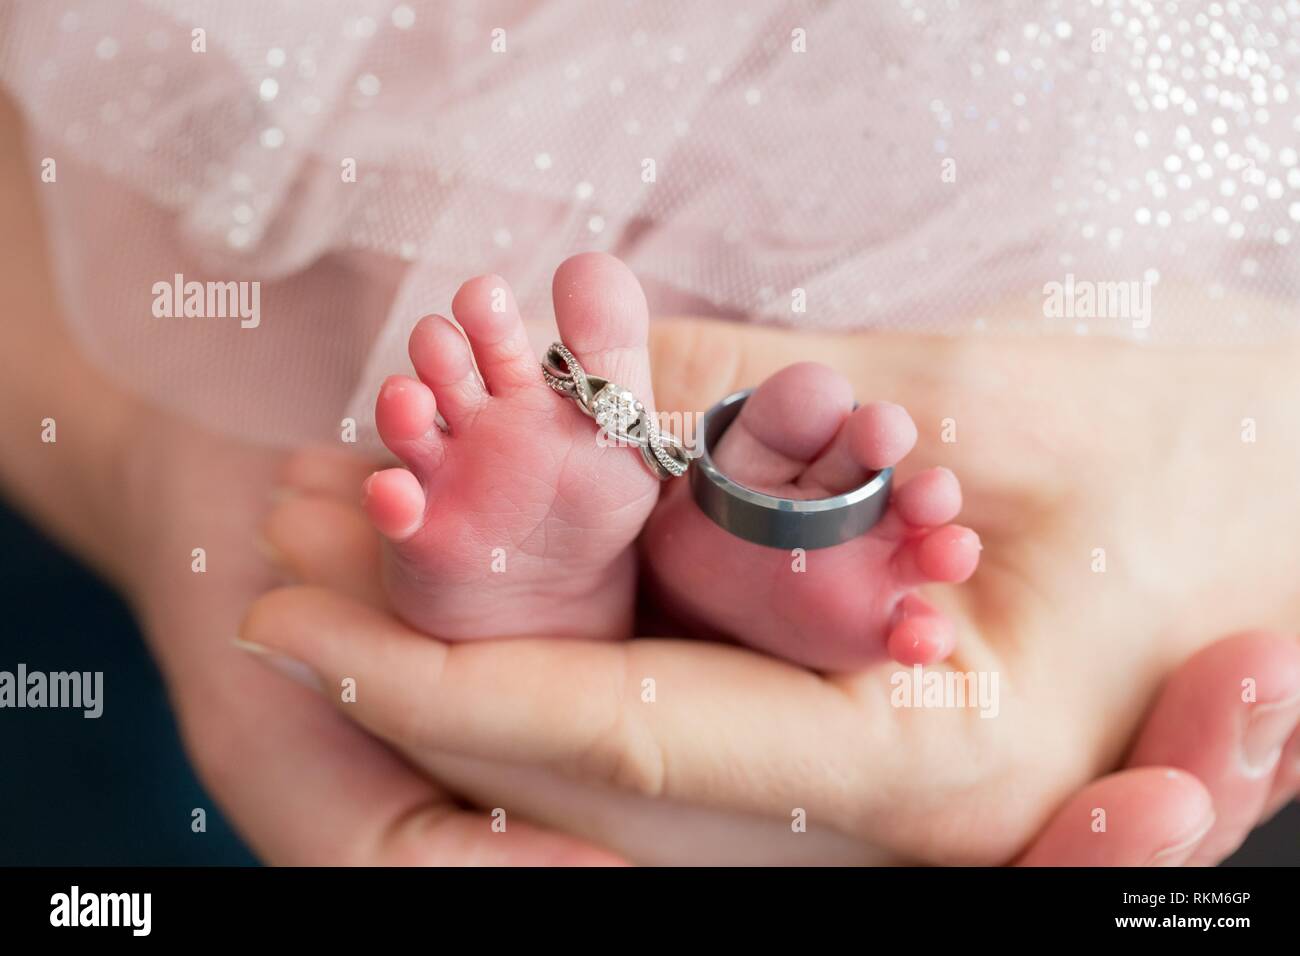 Mama Y Papa Manos Sosteniendo Un Bebe Recien Nacido Con Los Anillos De Boda Sobre Los Pies Del Nino Fotografia De Stock Alamy